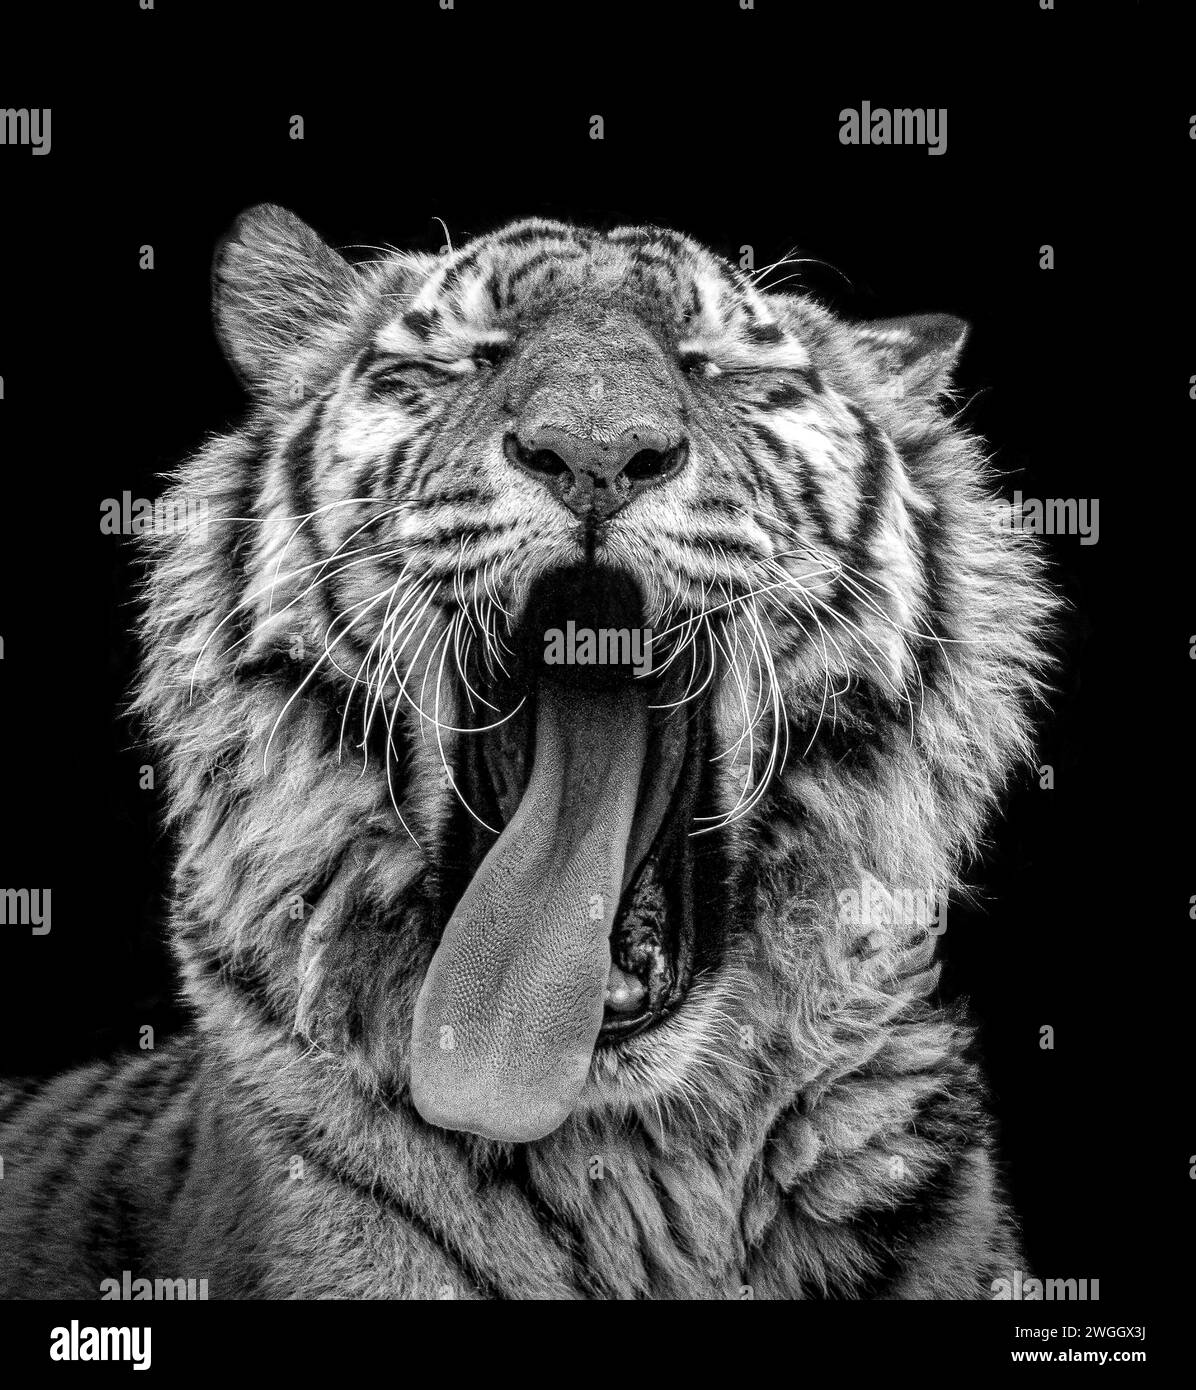 Una tigre pronta per un pisolino DI gatto, LO ZOO DI BLACKPOOL, Regno Unito, IMMAGINI STRAORDINARIE scattate negli zoo di tutto il Regno Unito mostrano anche le mascelle spalancate dei nostri predatori più temibili. Foto Stock